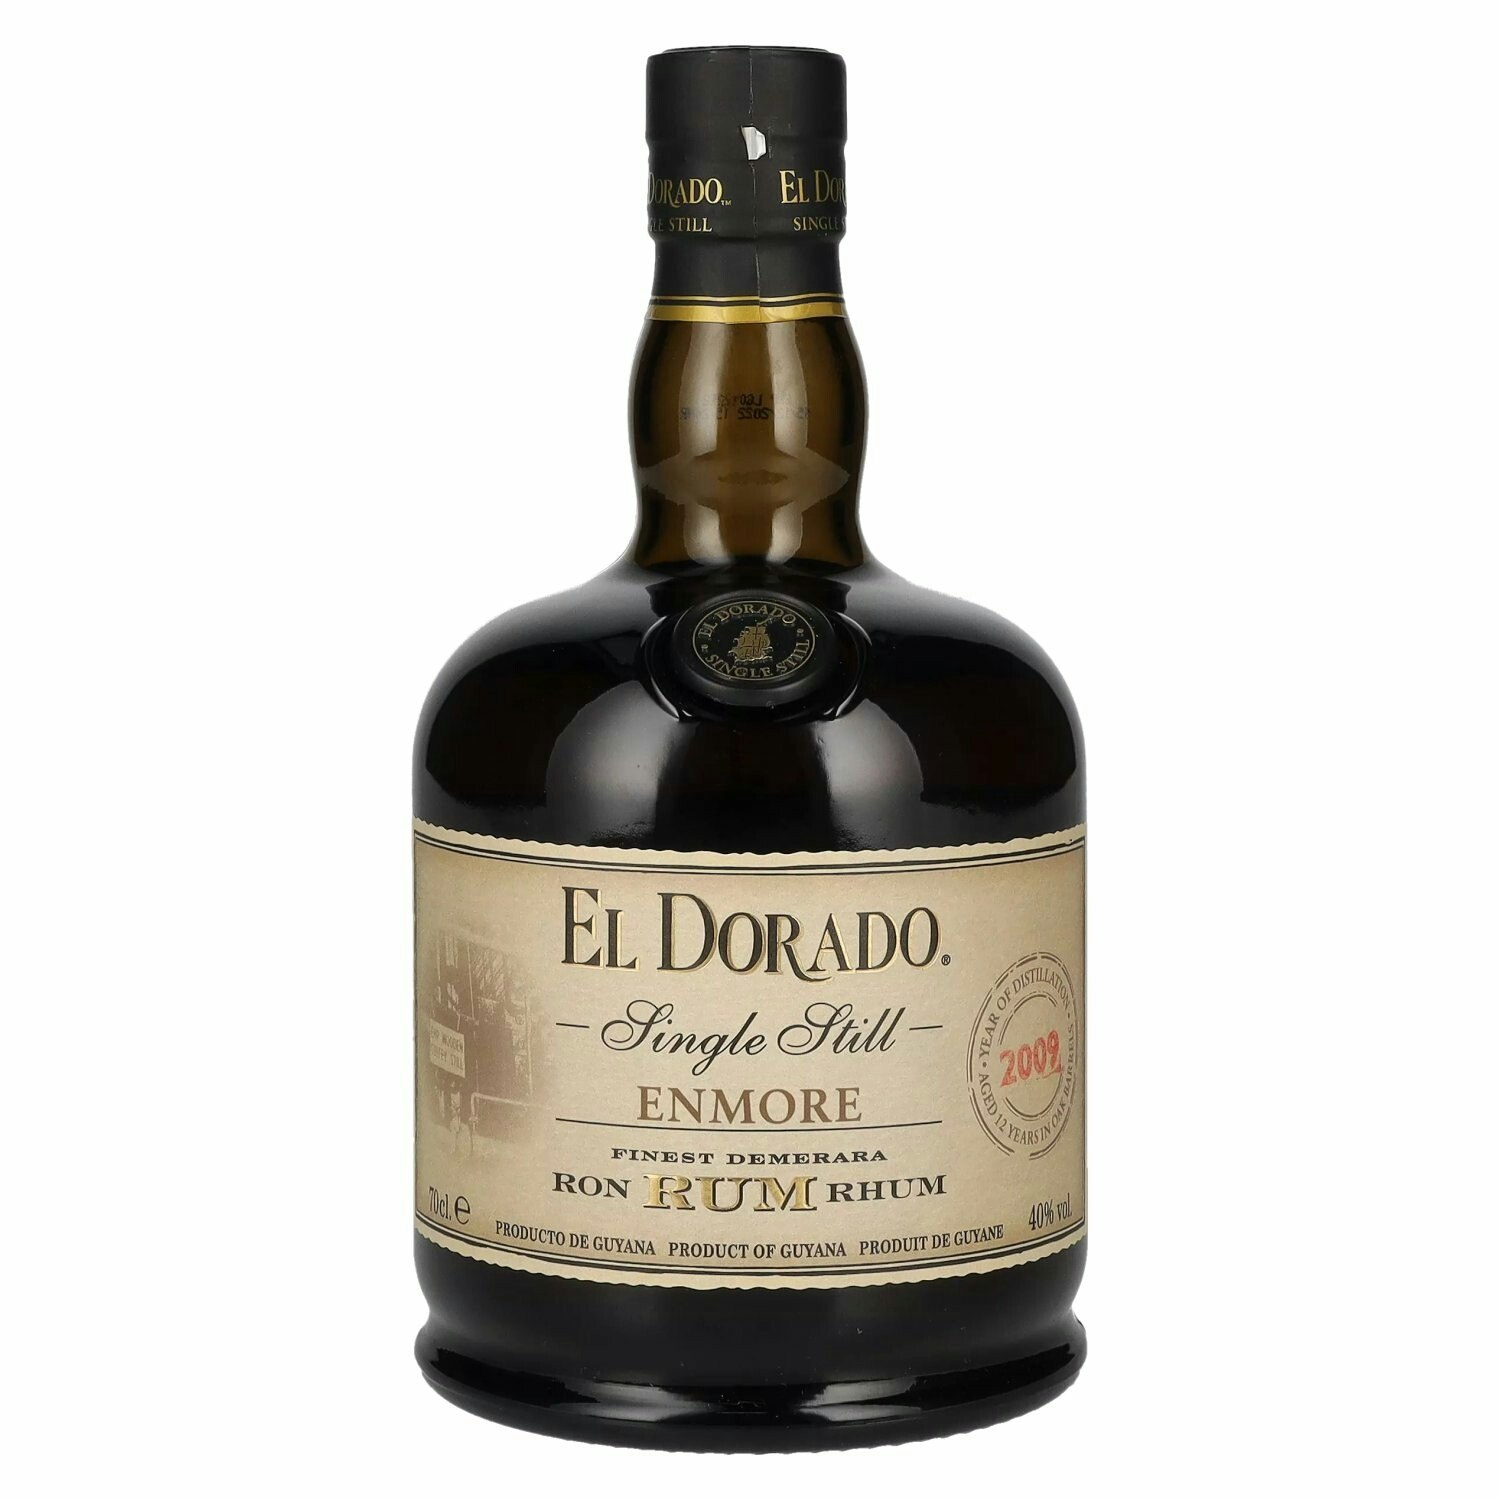 El Dorado Single Still ENMORE Finest Demerara Rum 2009 40% Vol. 0,7l